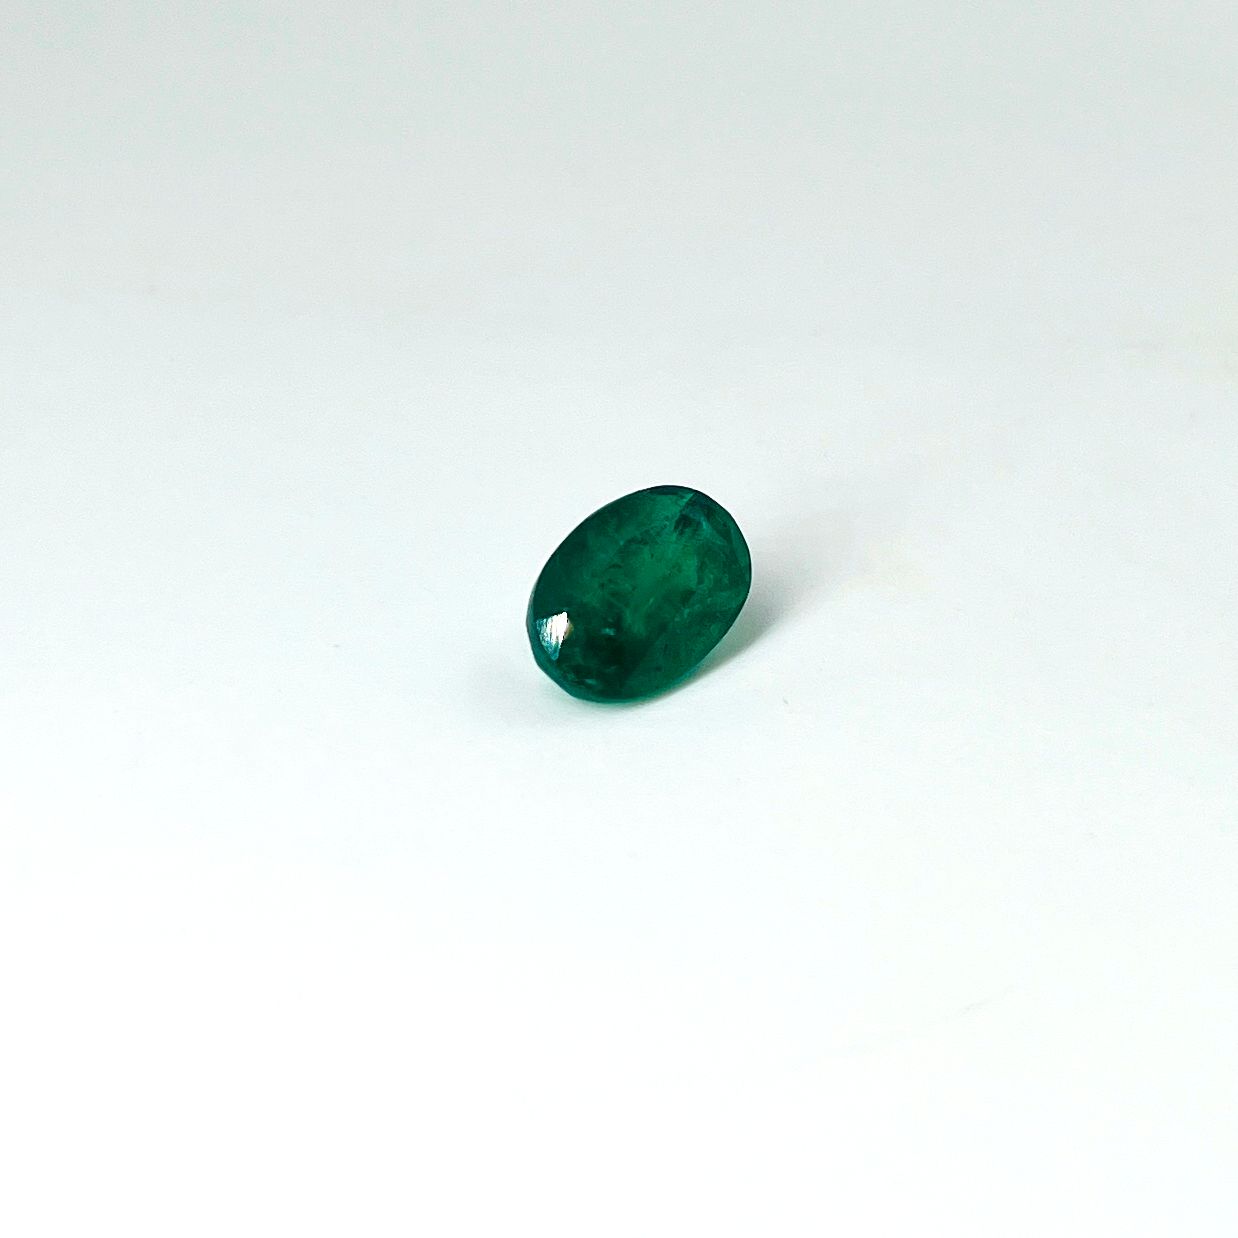 Null 椭圆形绿宝石，重4.73克拉。(附有AIG证书，显示 "鲜艳的绿色"，有轻微的油污处理："CEE (O) minor oil"。